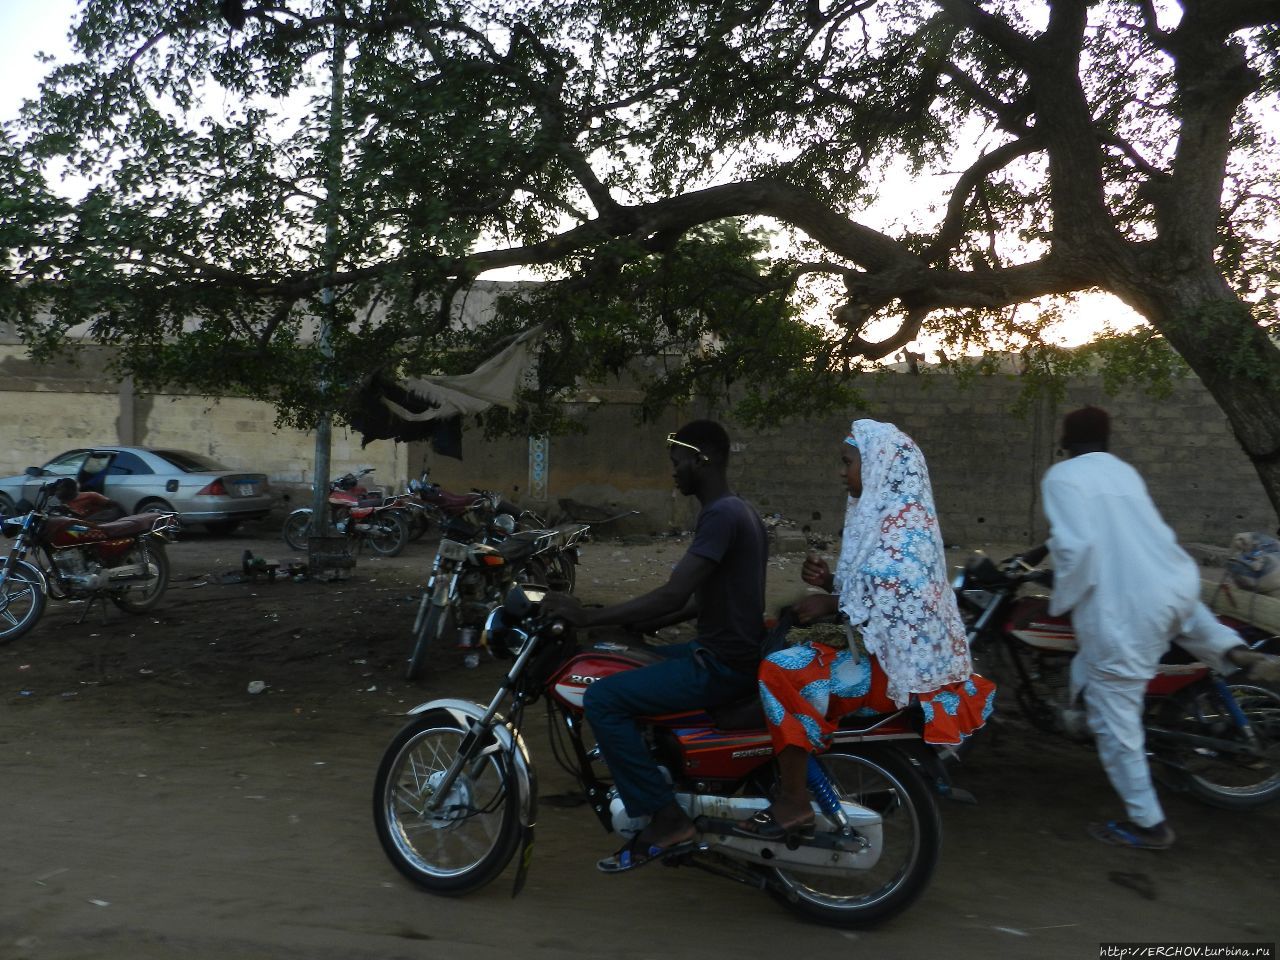 Нигер. Ч — 25. Скотоводческий рынок Зиндер, Нигер